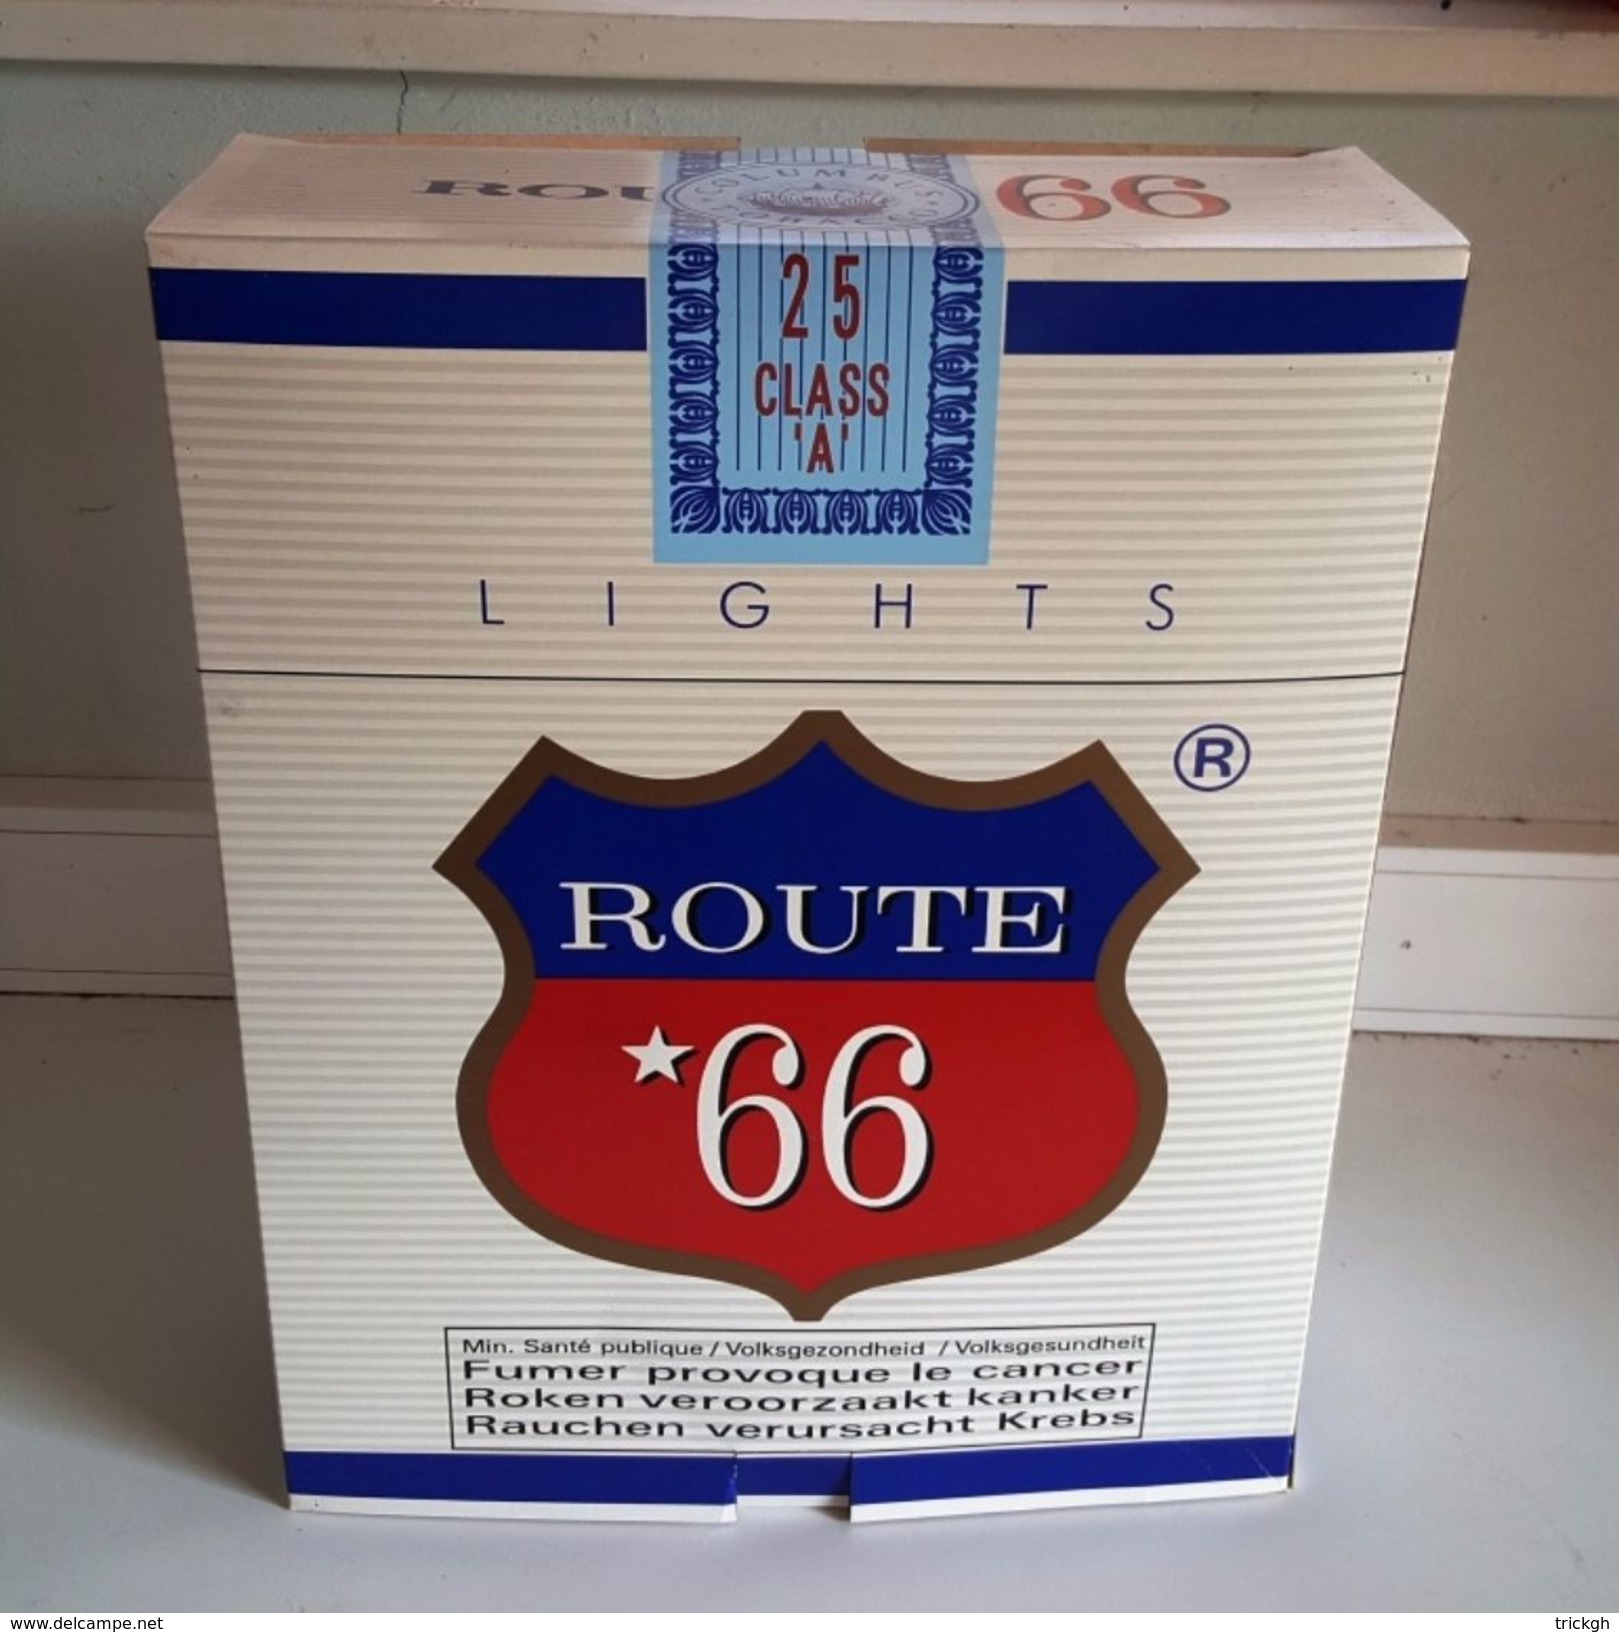 Grote Publidoos Sigaretten Route 66 - Reclame-artikelen